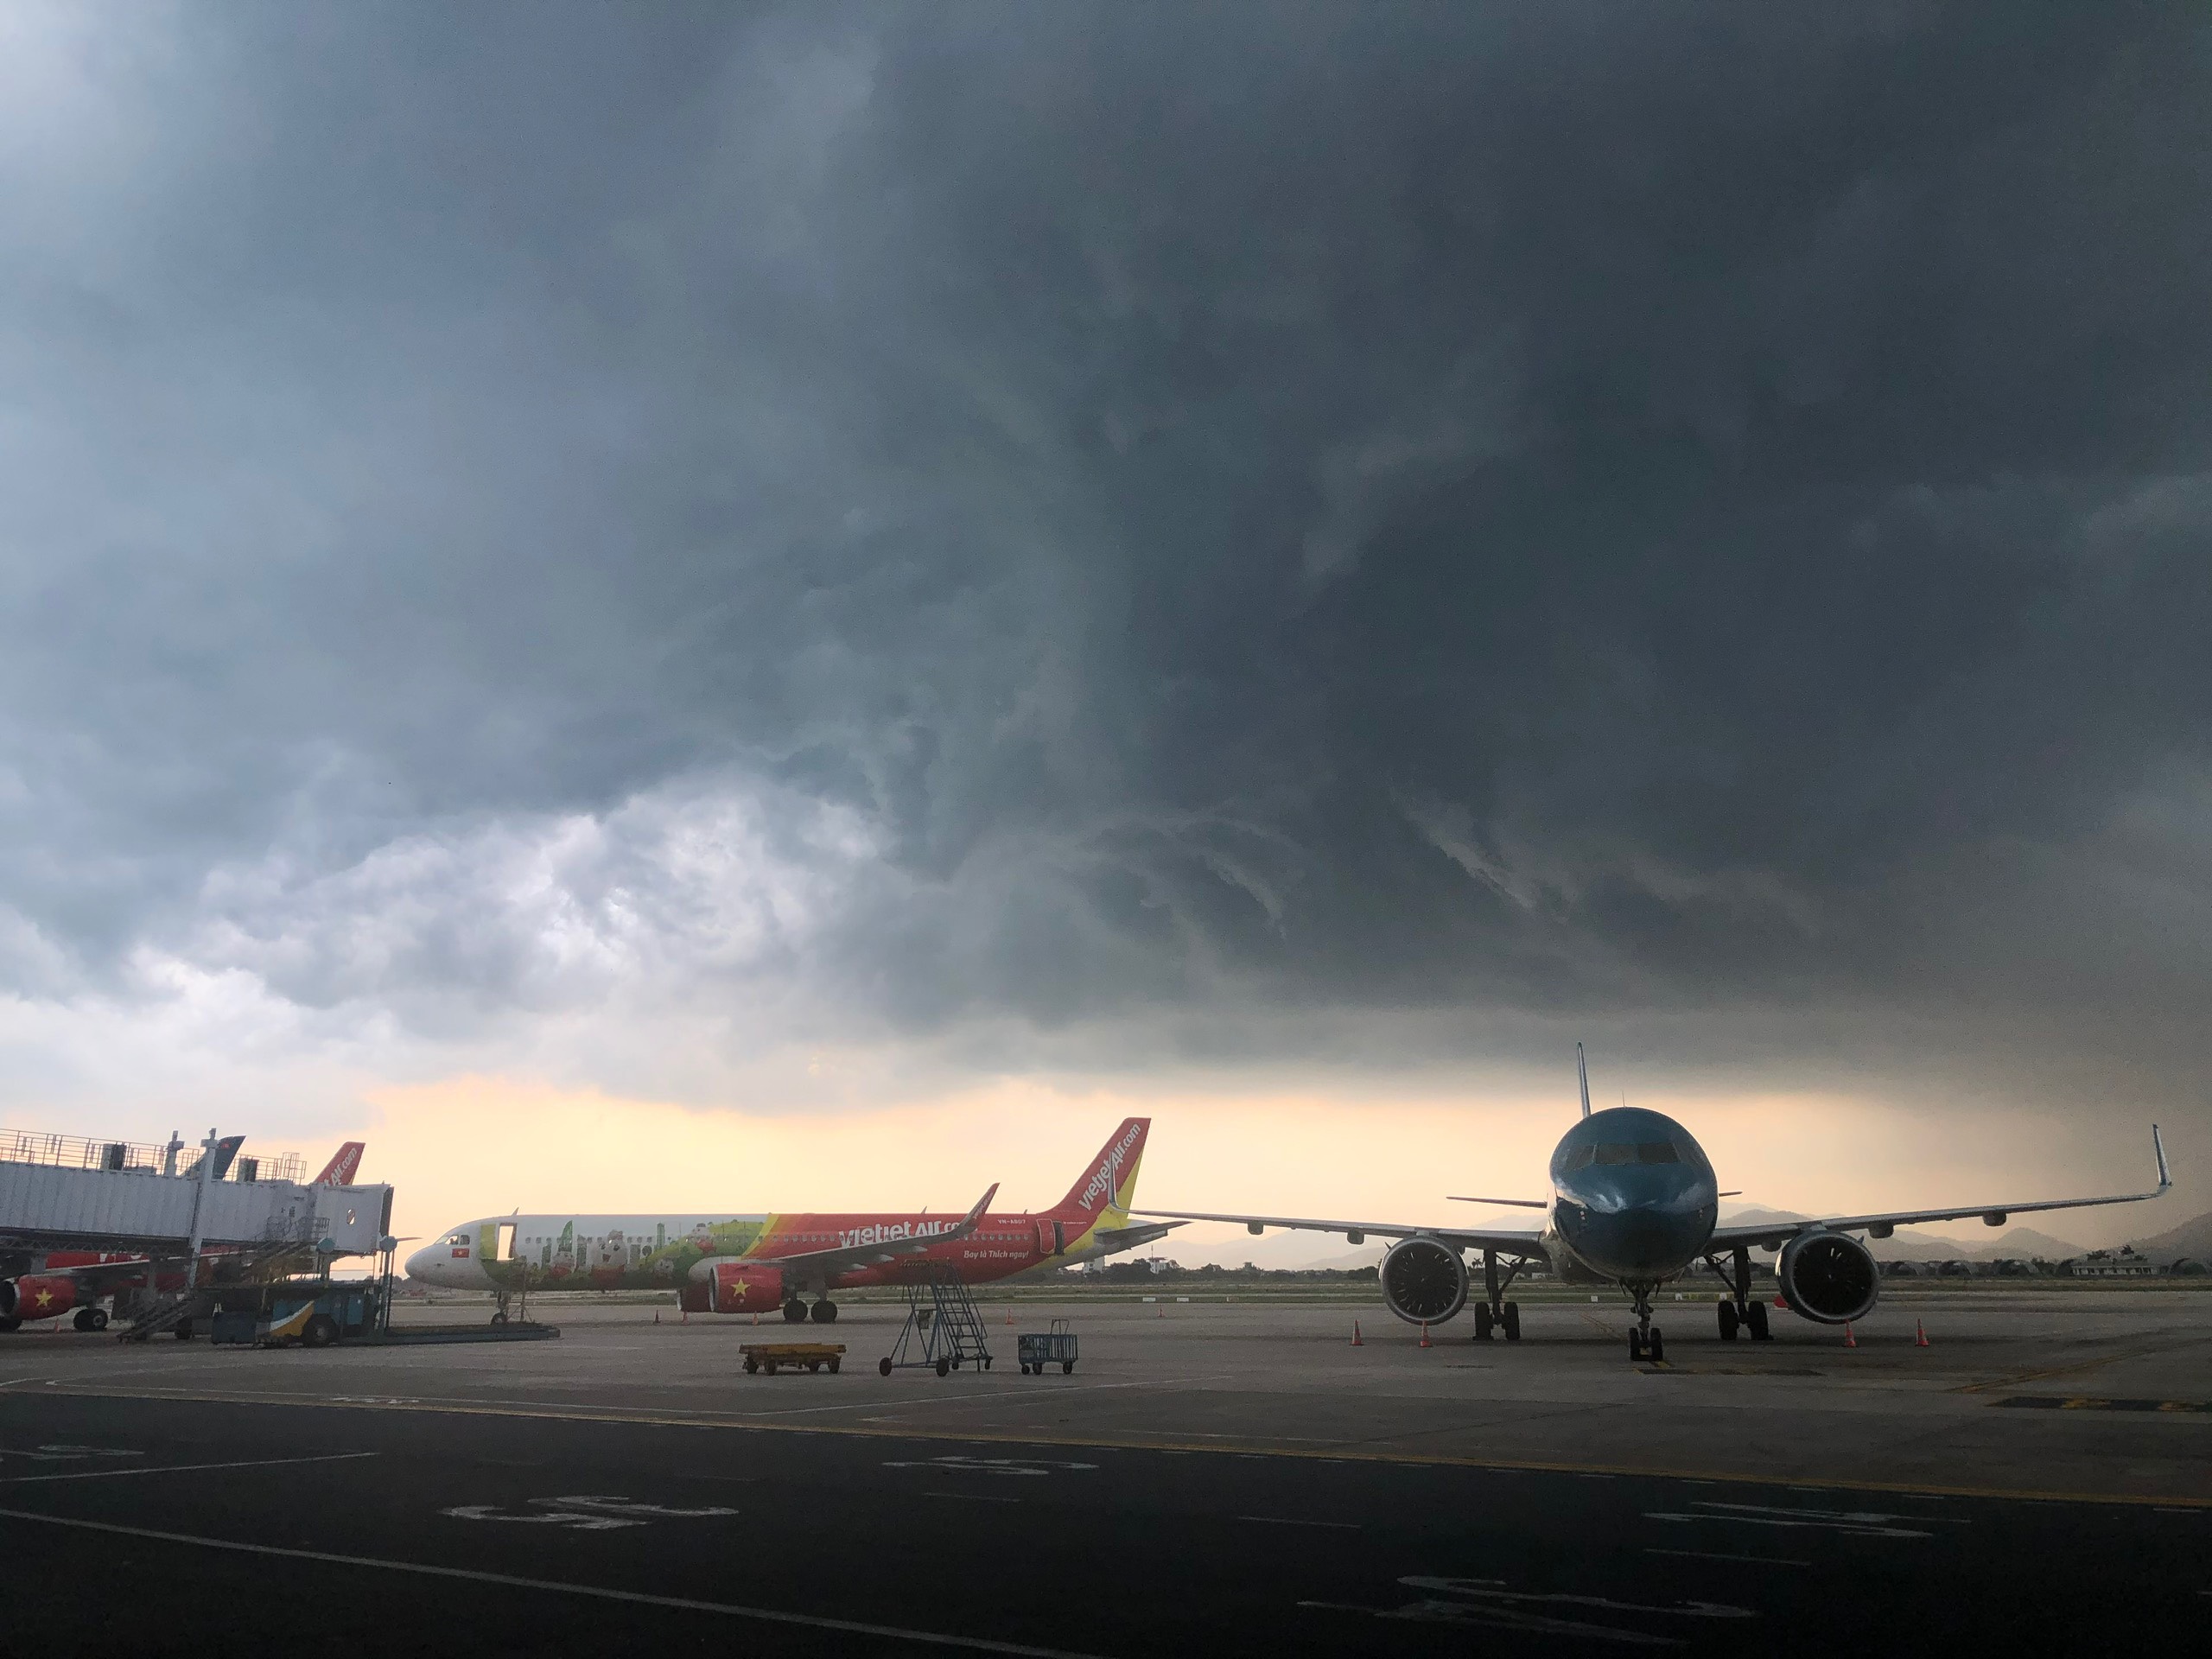 Đợt dông, mưa mạnh ảnh hưởng đến hoạt động bay tại các sân bay miền Bắc